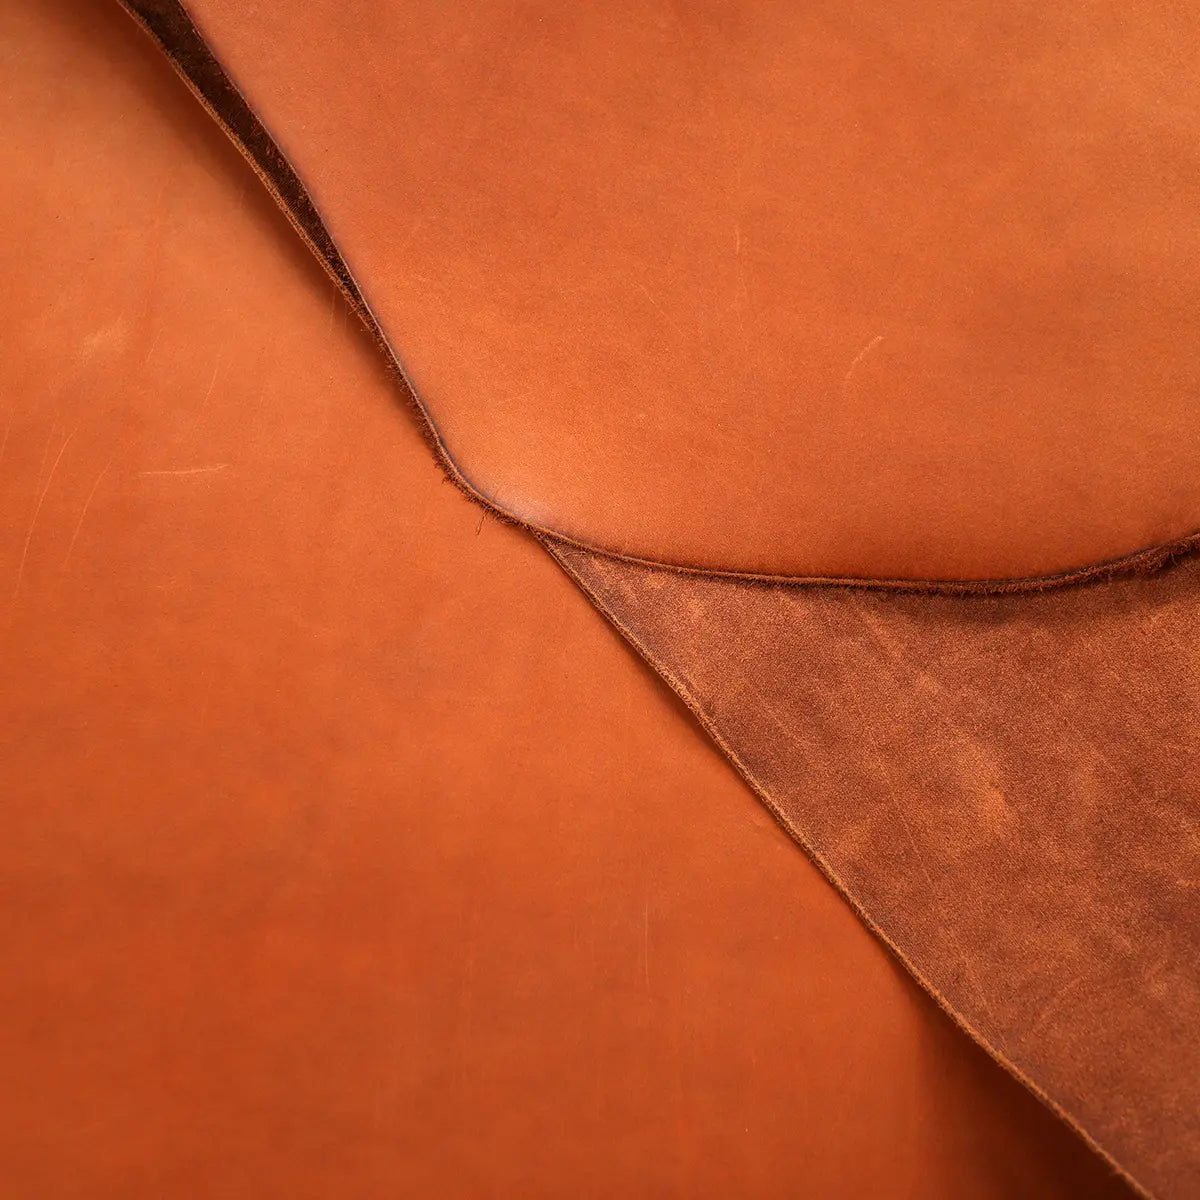 SB Foot Teakwood Chrome Tanned 5-6oz Leather